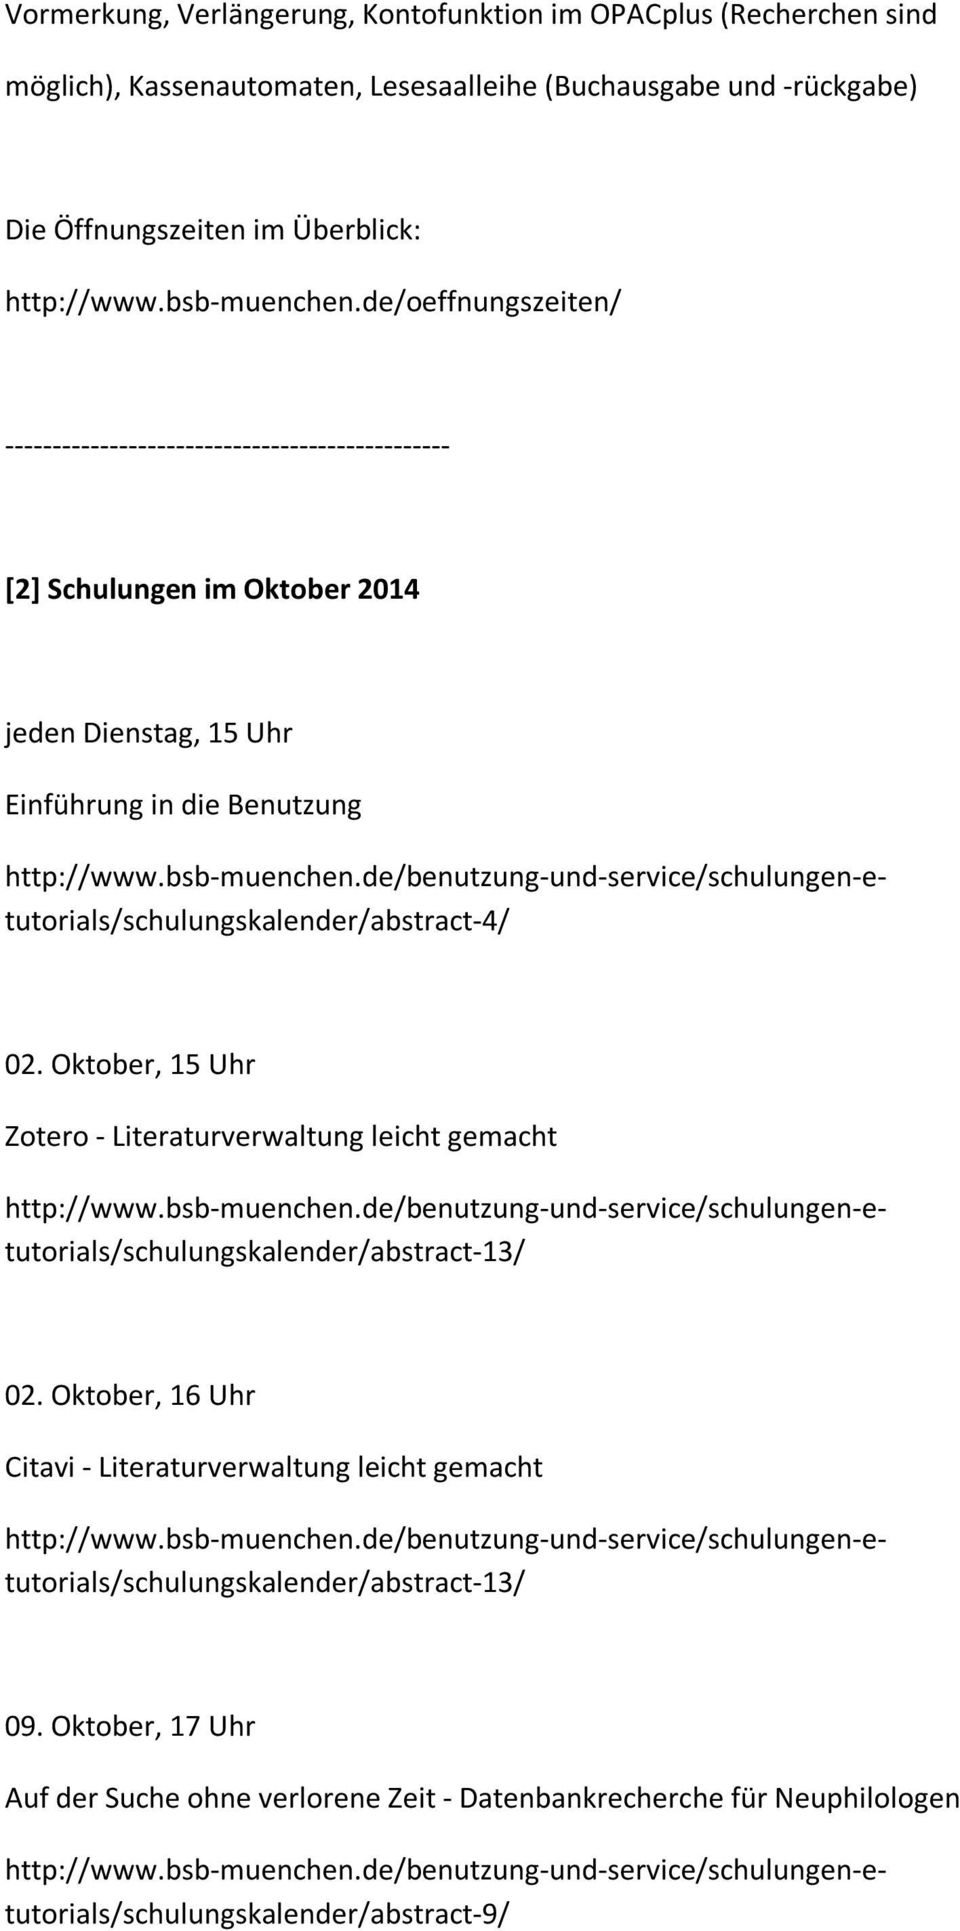 Oktober, 16 Uhr Citavi - Literaturverwaltung leicht gemacht 09. Oktober, 17 Uhr Auf der Suche ohne verlorene Zeit - Datenbankrecherche für Neuphilologen http://www.bsb-muenchen.